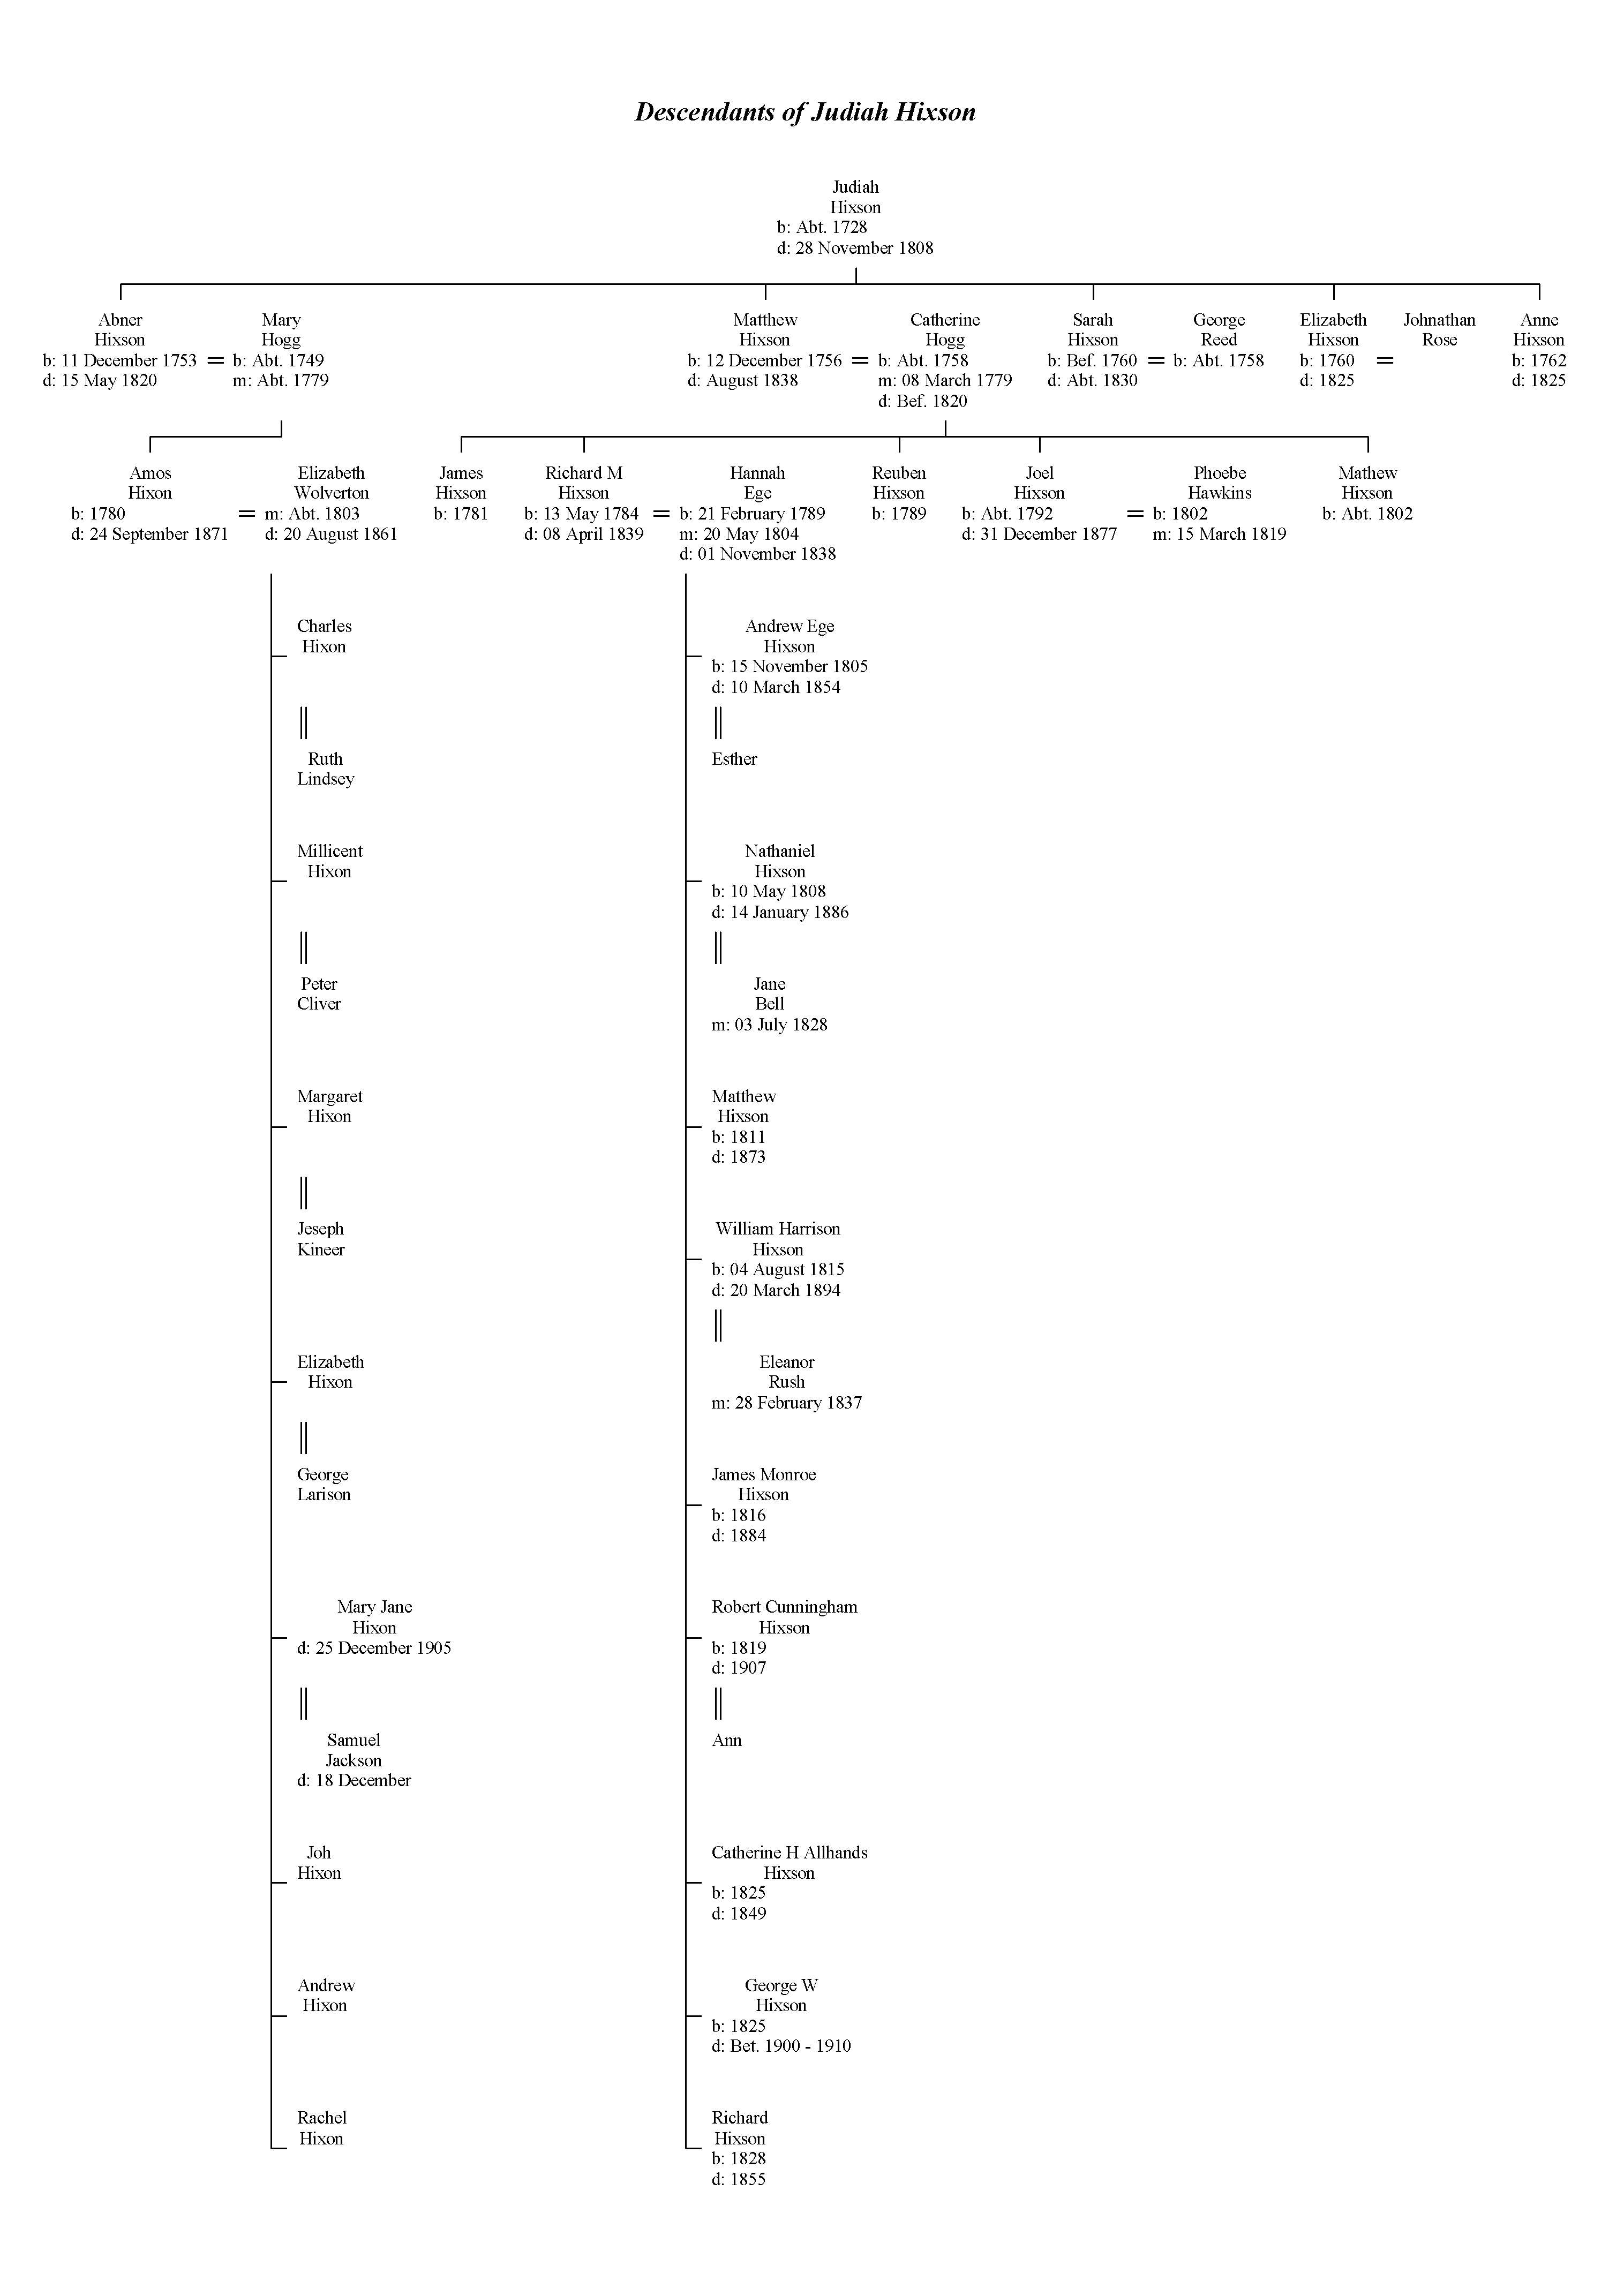 Family tree for Judiah Hixson, born ca 1728, died 1808